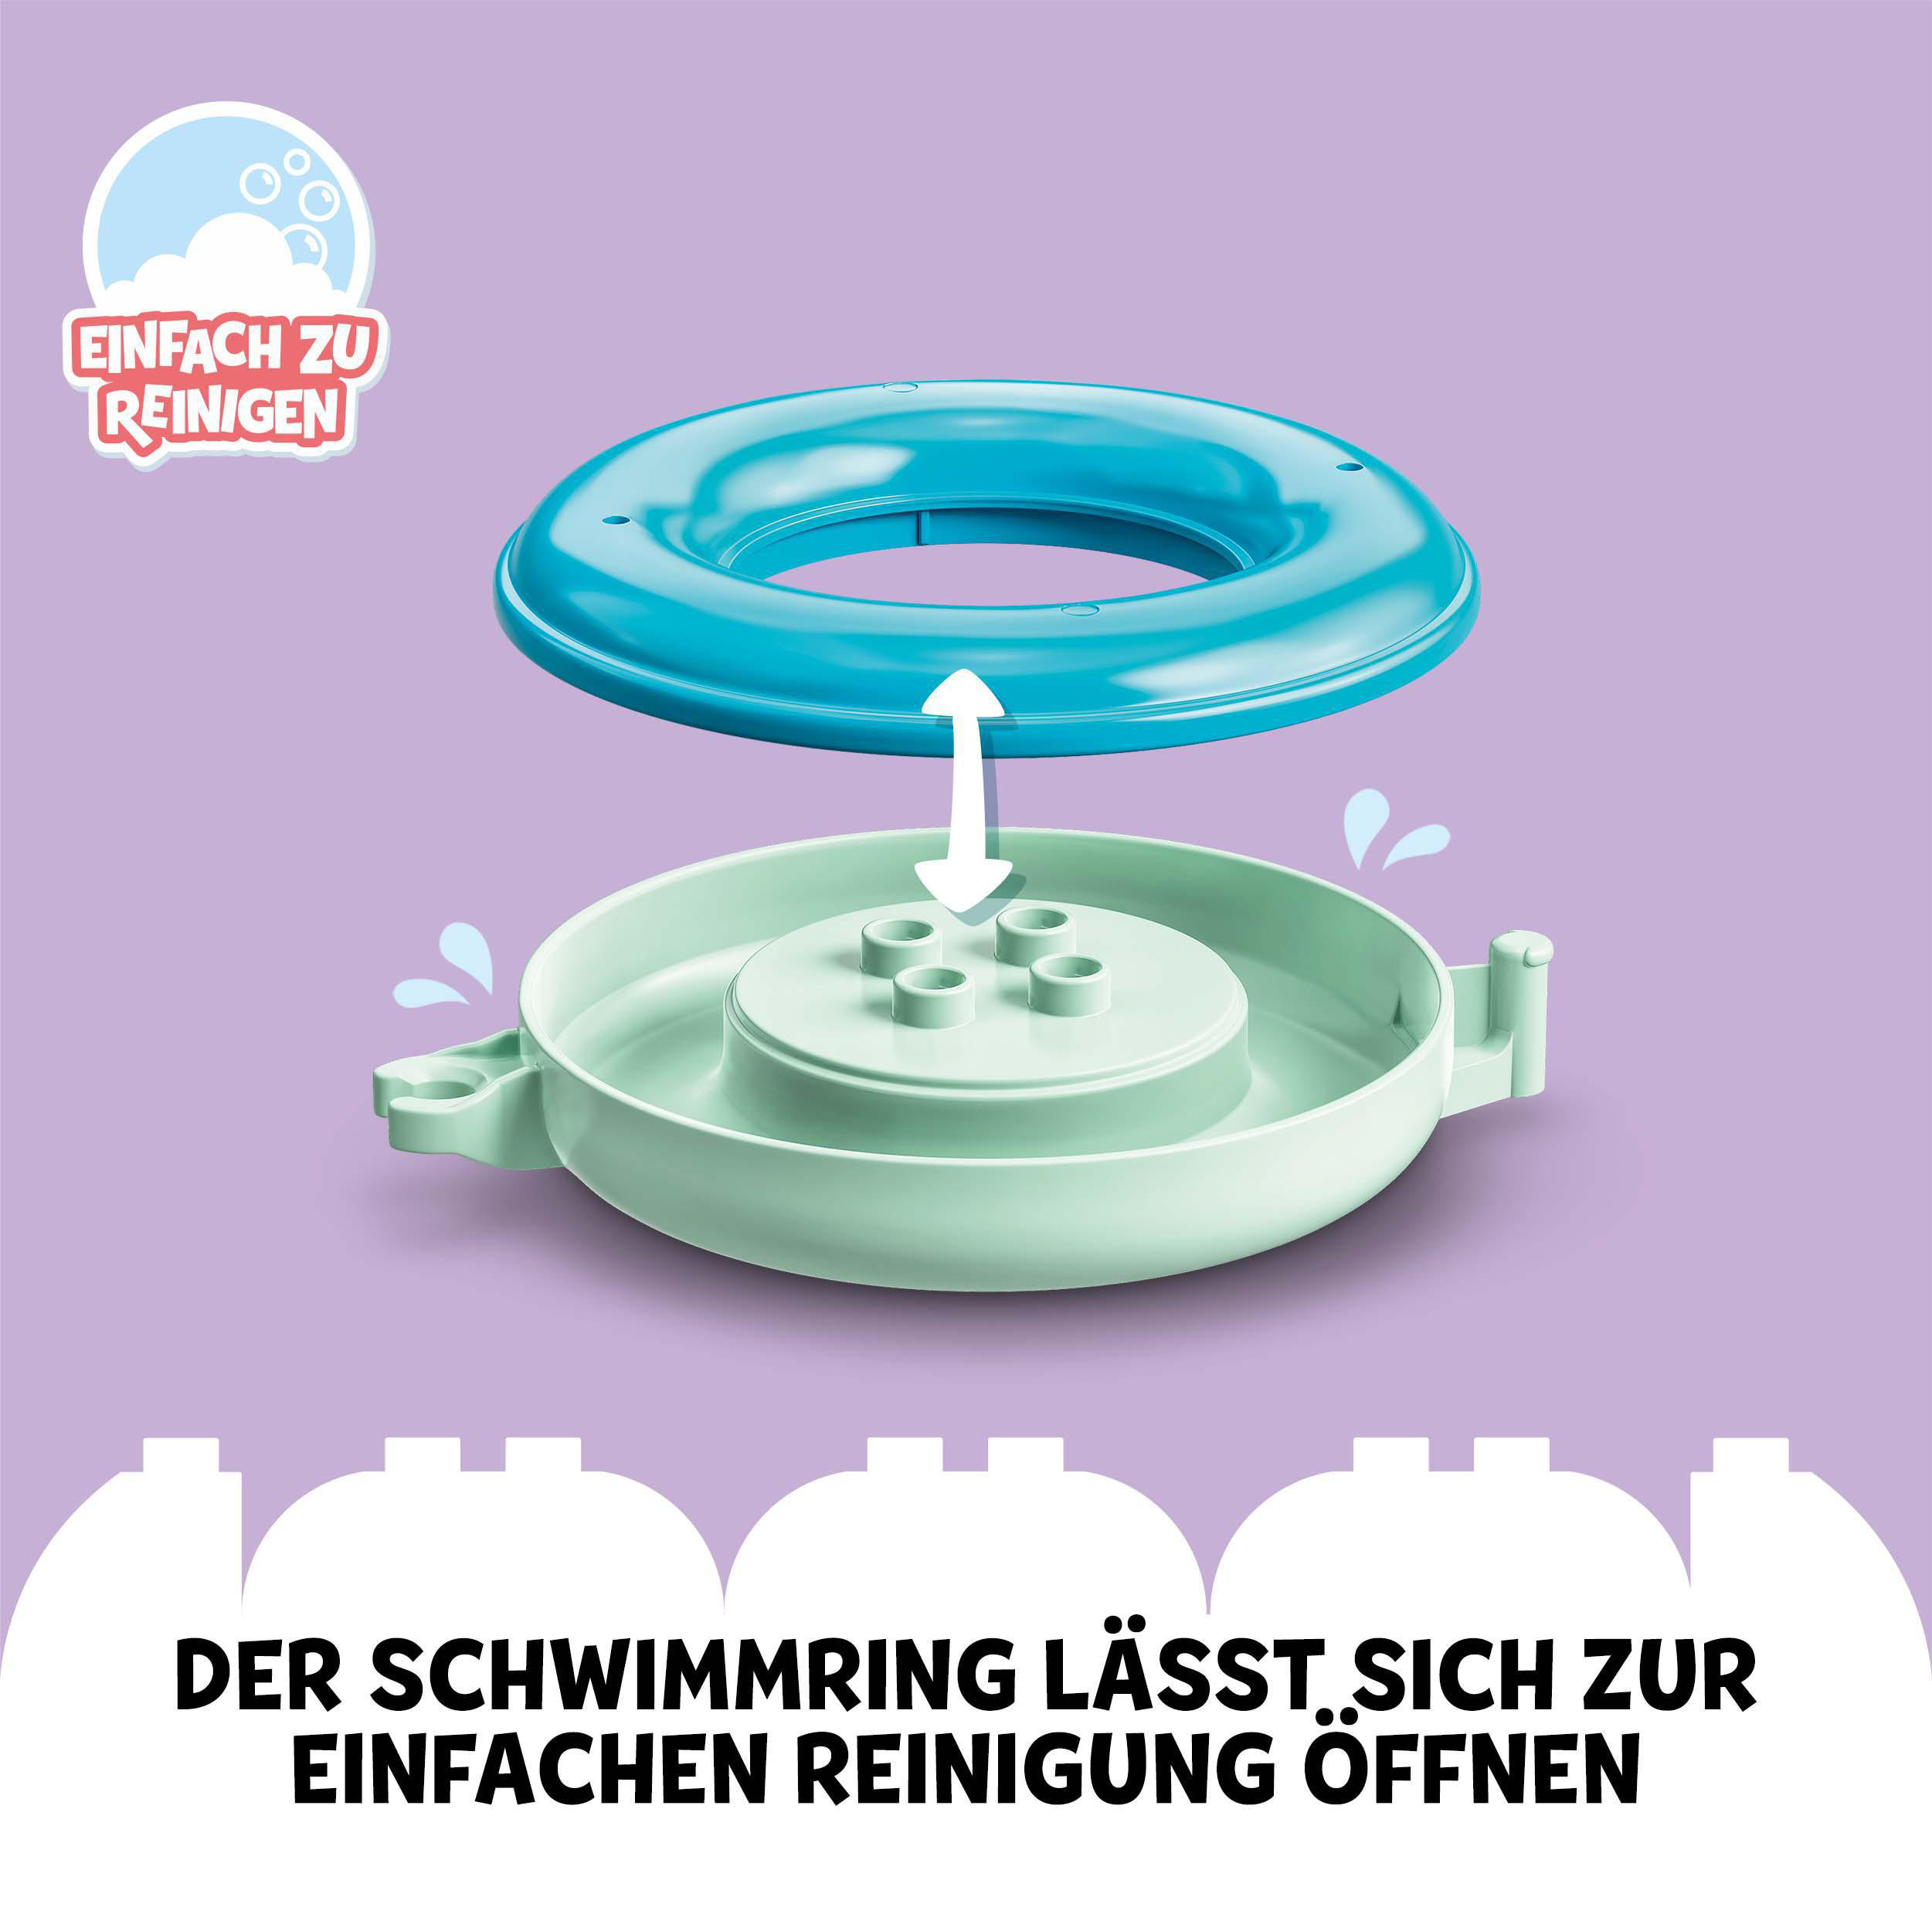 Bausatz, Tierzug DUPLO Badewannenspaß: Mehrfarbig LEGO Schwimmender 10965